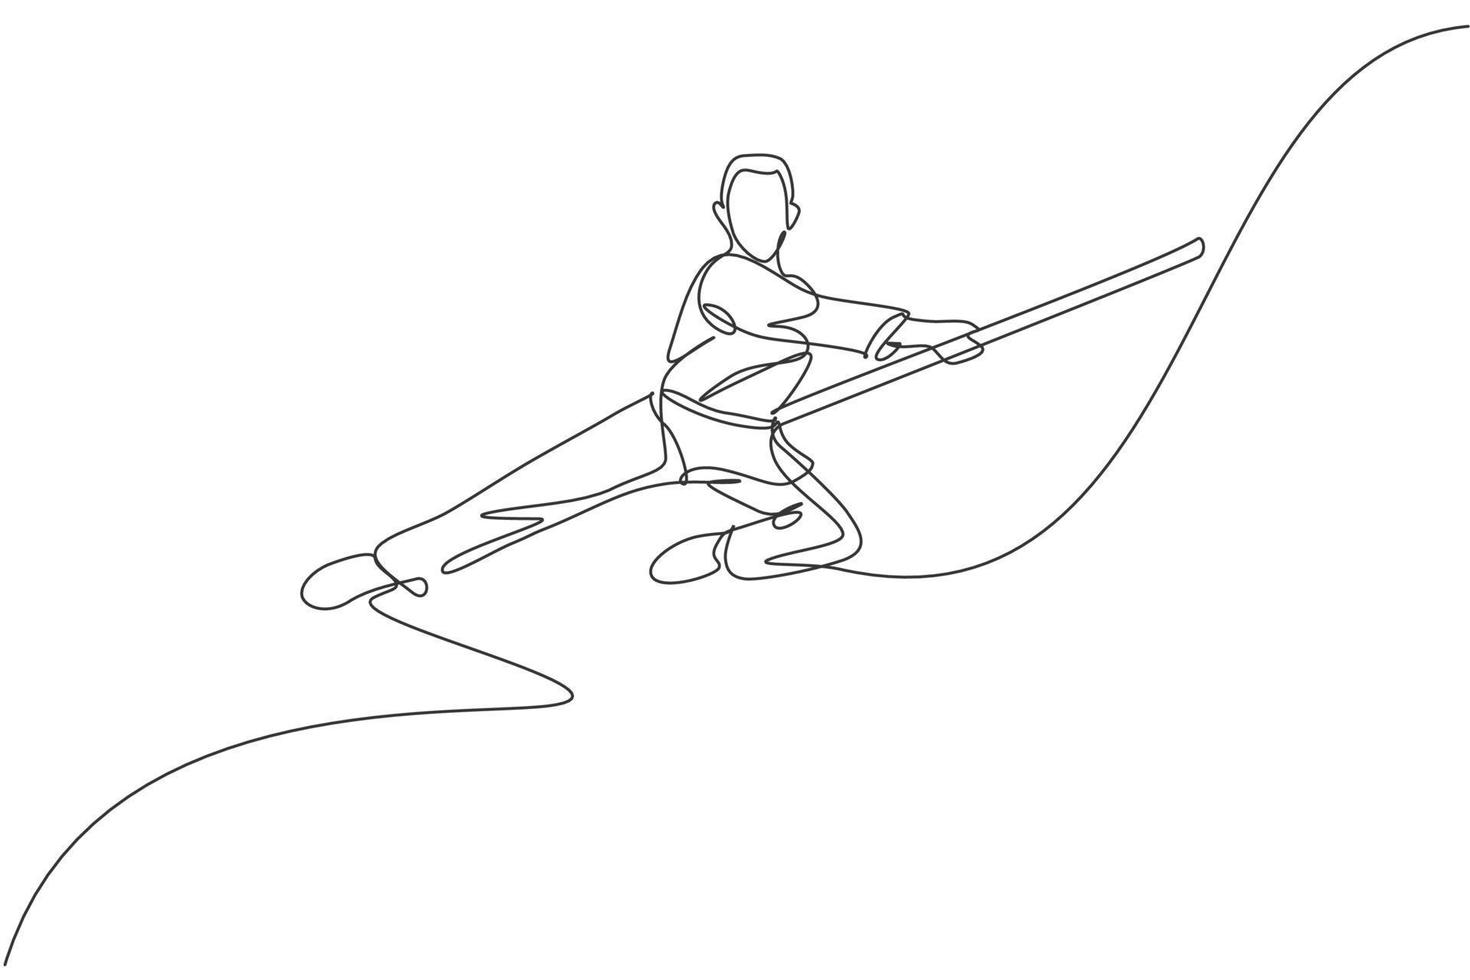 en kontinuerlig linjeteckning av wushu mästare man hoppar, kung fu krigare i kimono med lång stav på träning. kampsport sport tävling koncept. dynamisk enda rad rita design vektorillustration vektor